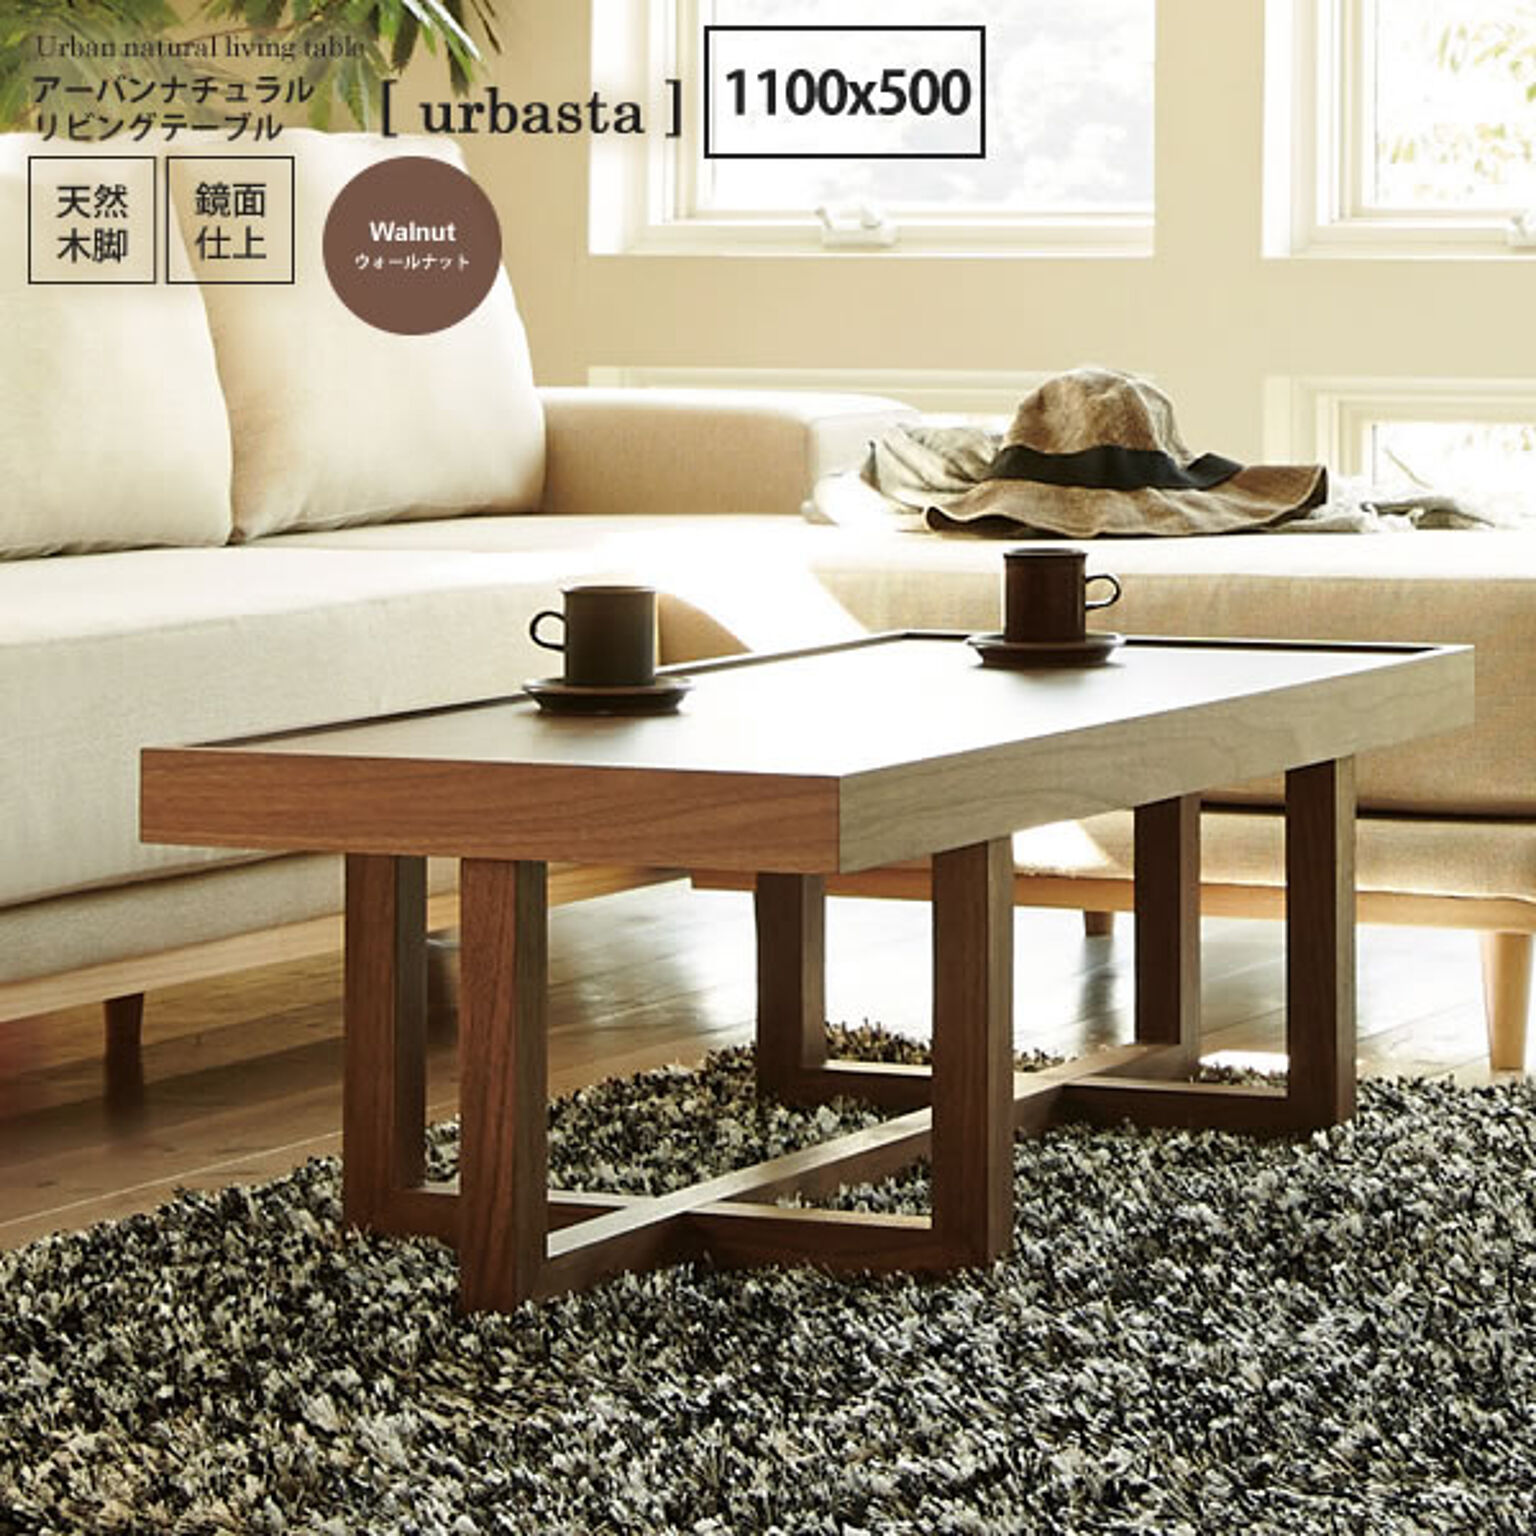 ウォールナット：1100x500 ： アーバンナチュラル リビングテーブル【urbasta】 ブラウン(brown) (ナチュラル) センターテーブル コーヒーテーブル 